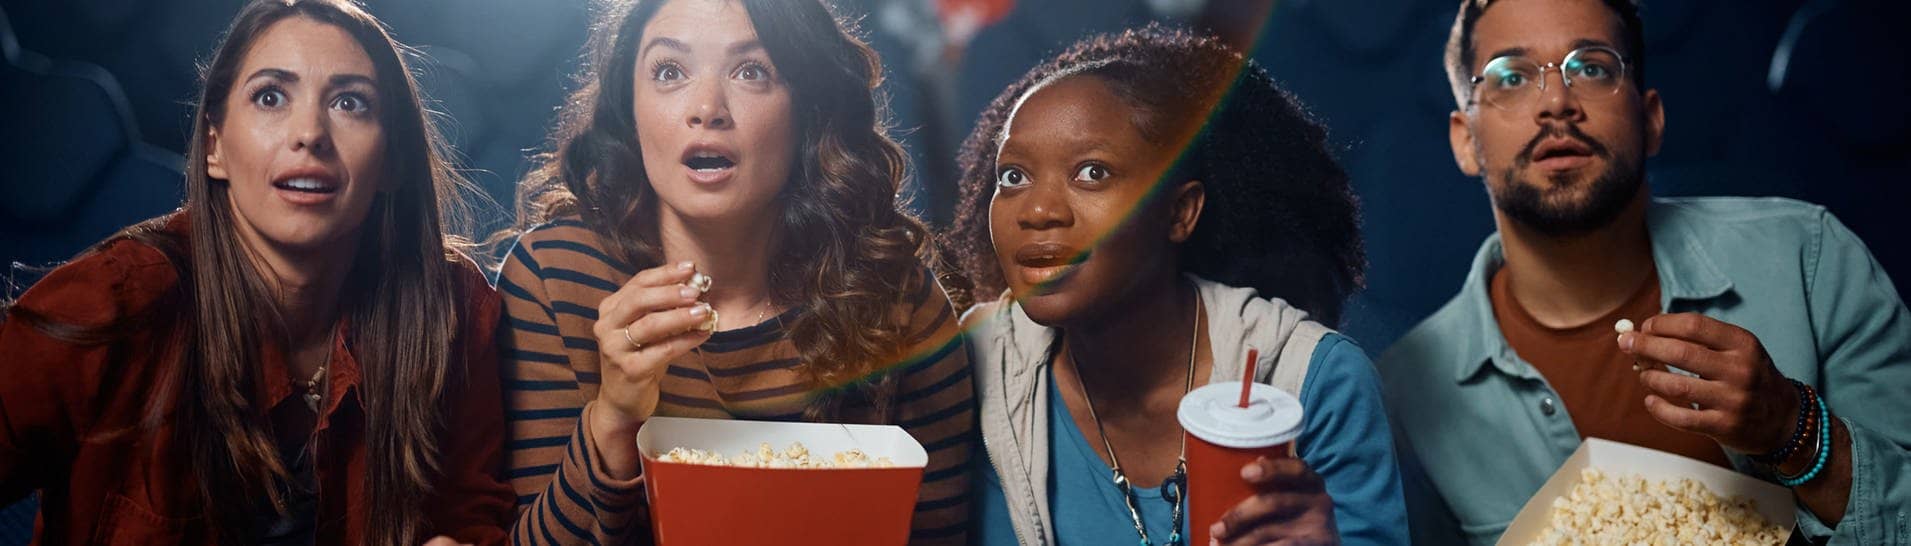 Darf man Snacks mit ins Kino nehmen? Eine Gruppe von Menschen sitzt mit Snacks im Kino schaut gespannt (Foto: Adobe Stock, Drazen)